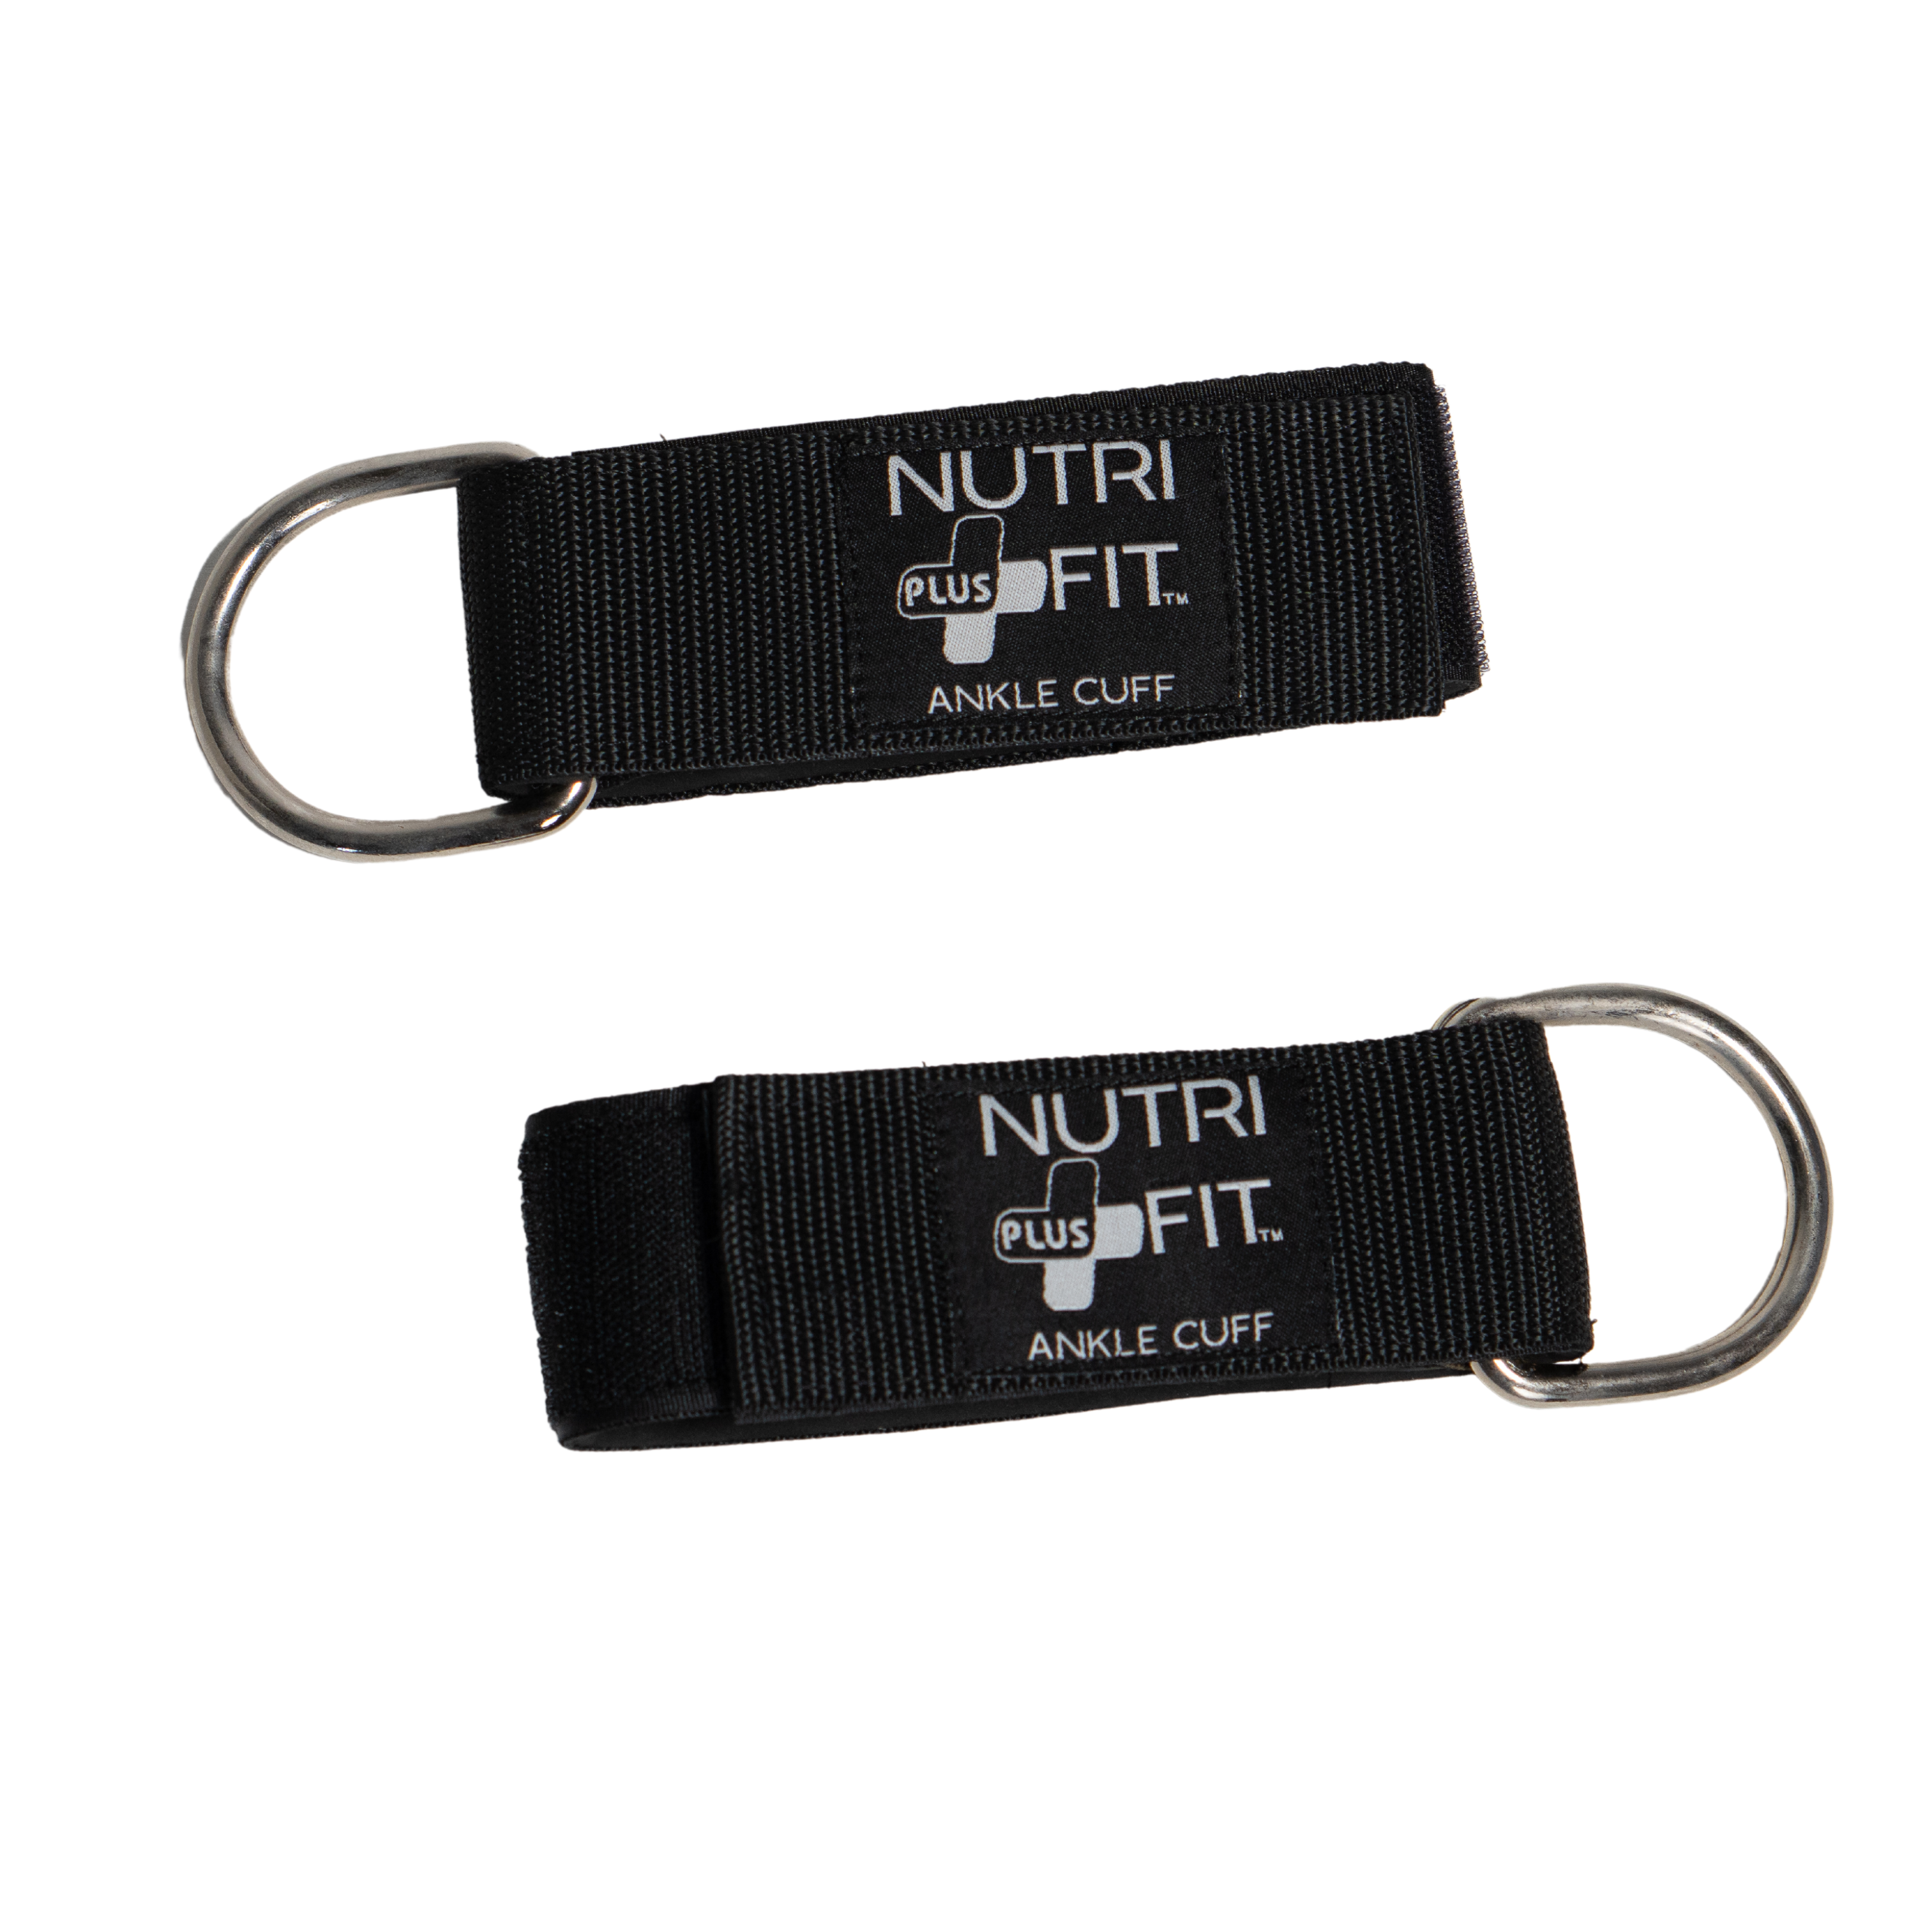 NutriFit Plus Ankle Cuff